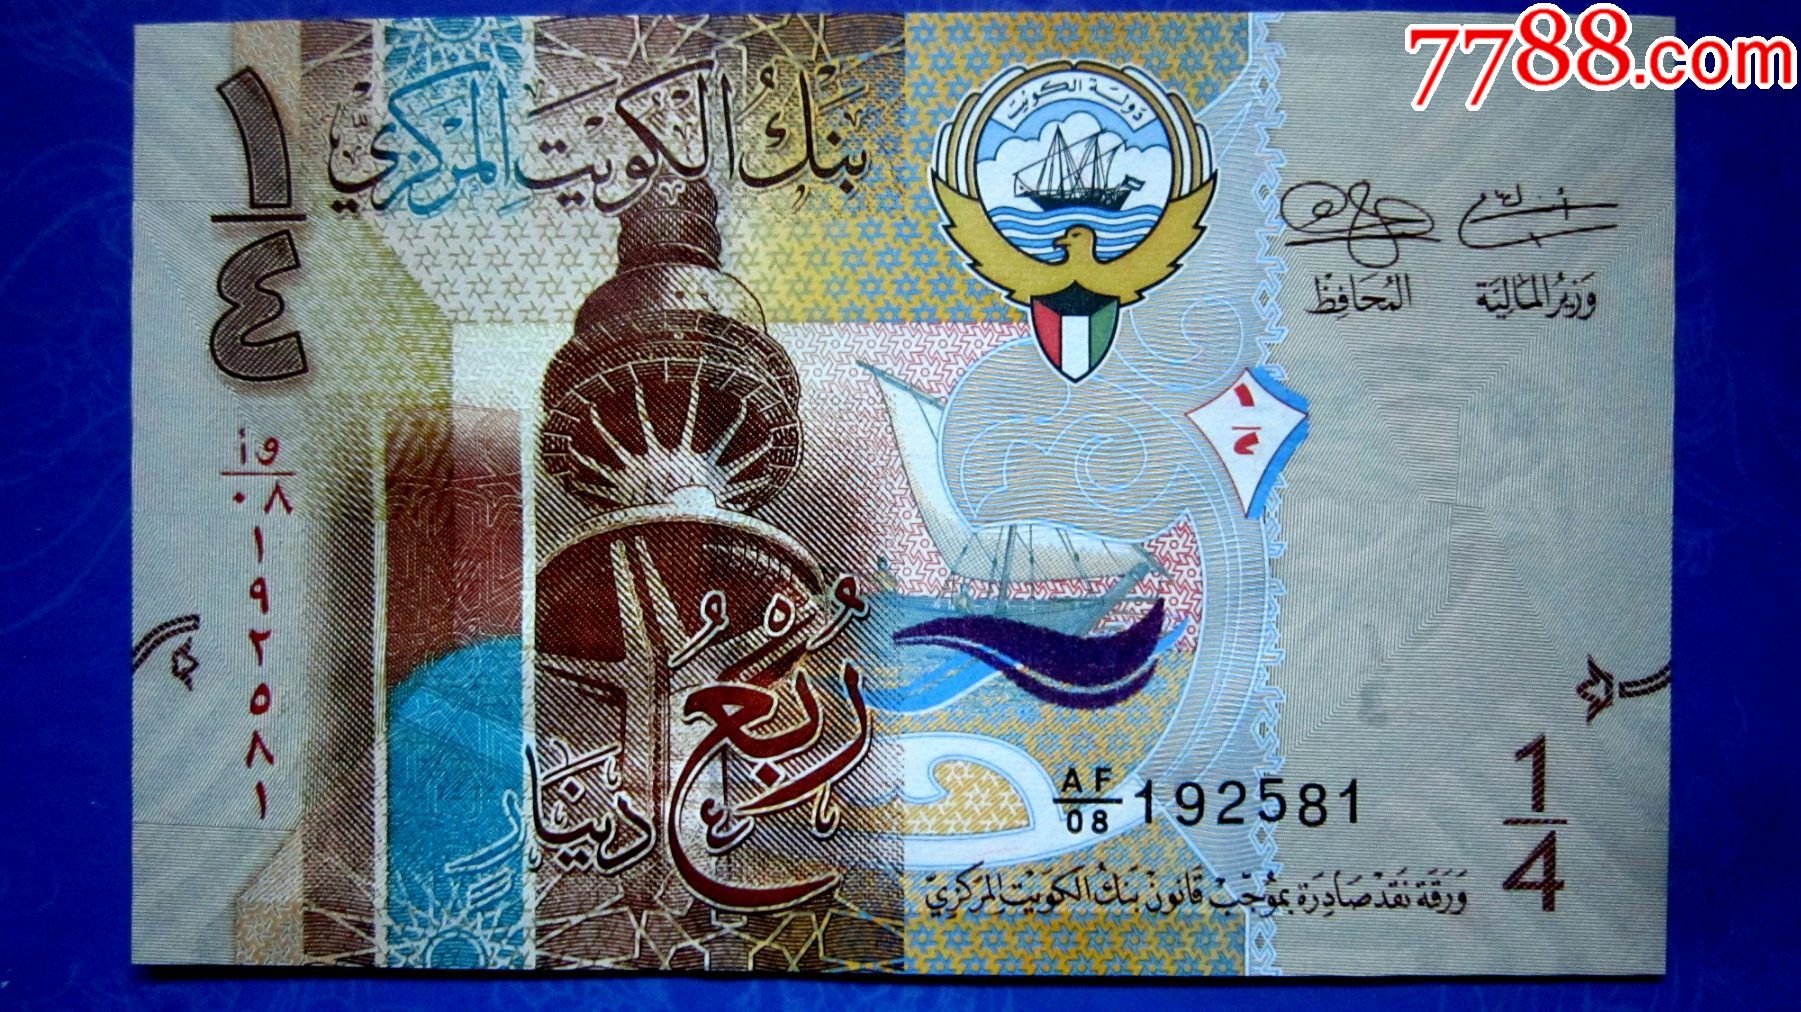 稀缺钞包真精美外钞科威特2014年025第纳尔荧光水印金属线防伪